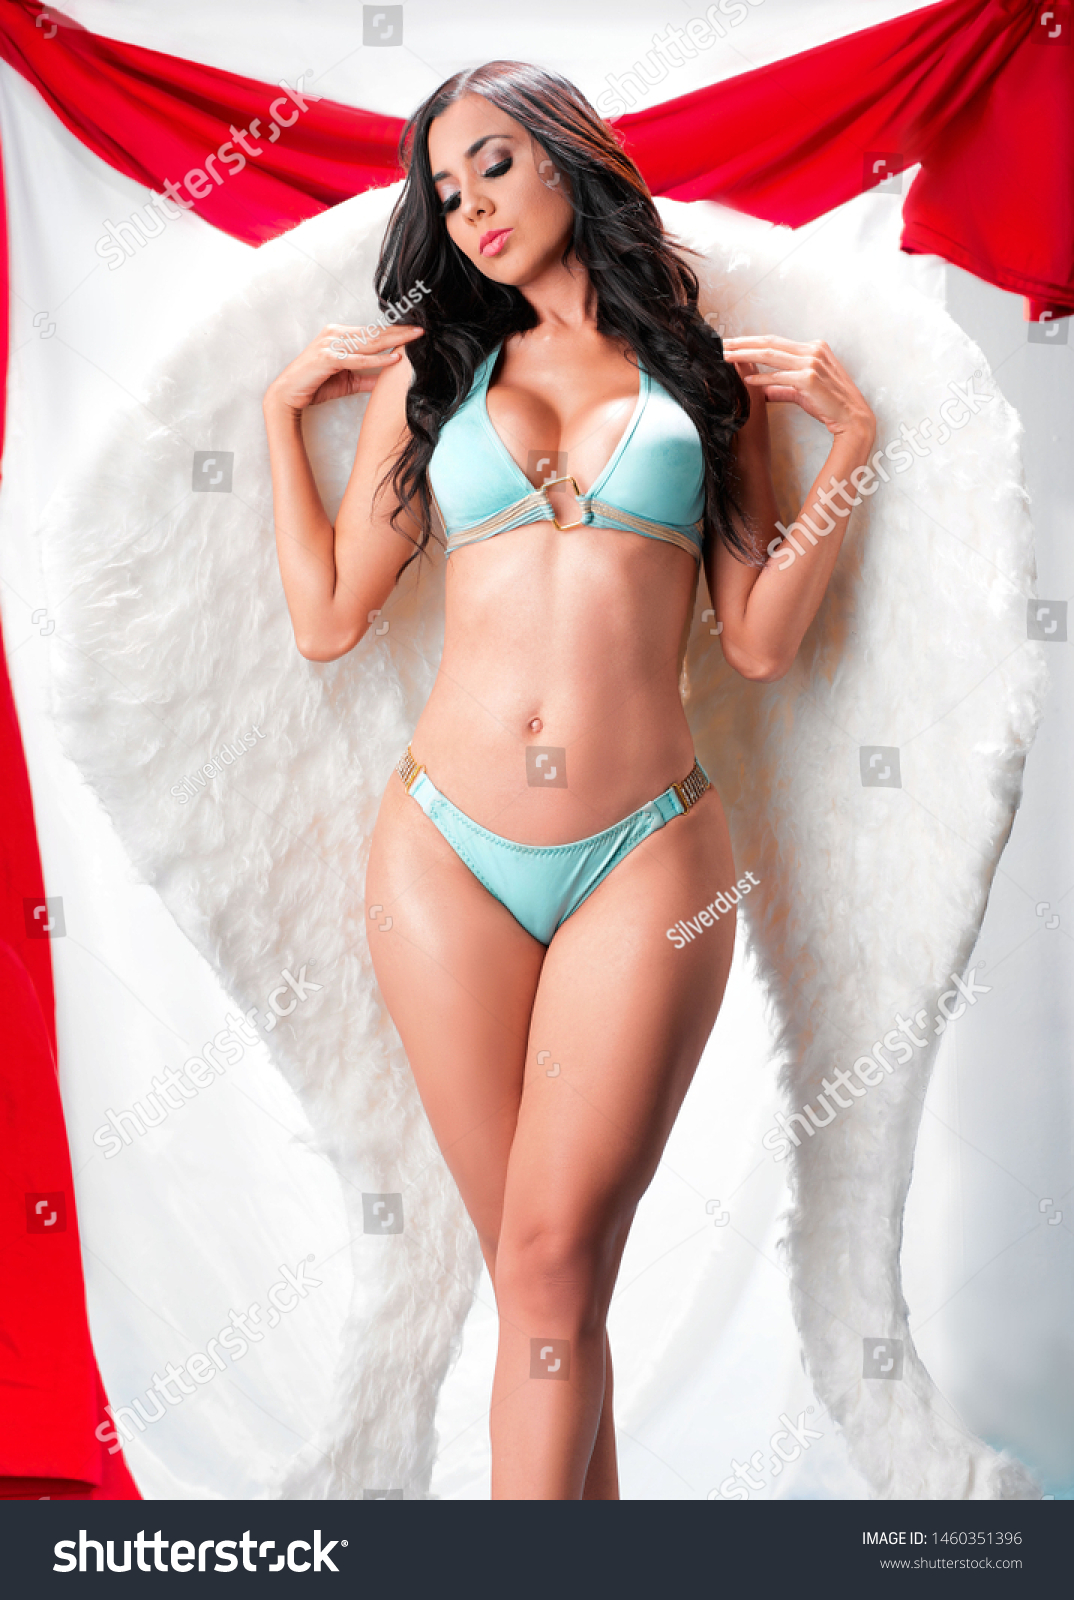 Sensual angel erotic